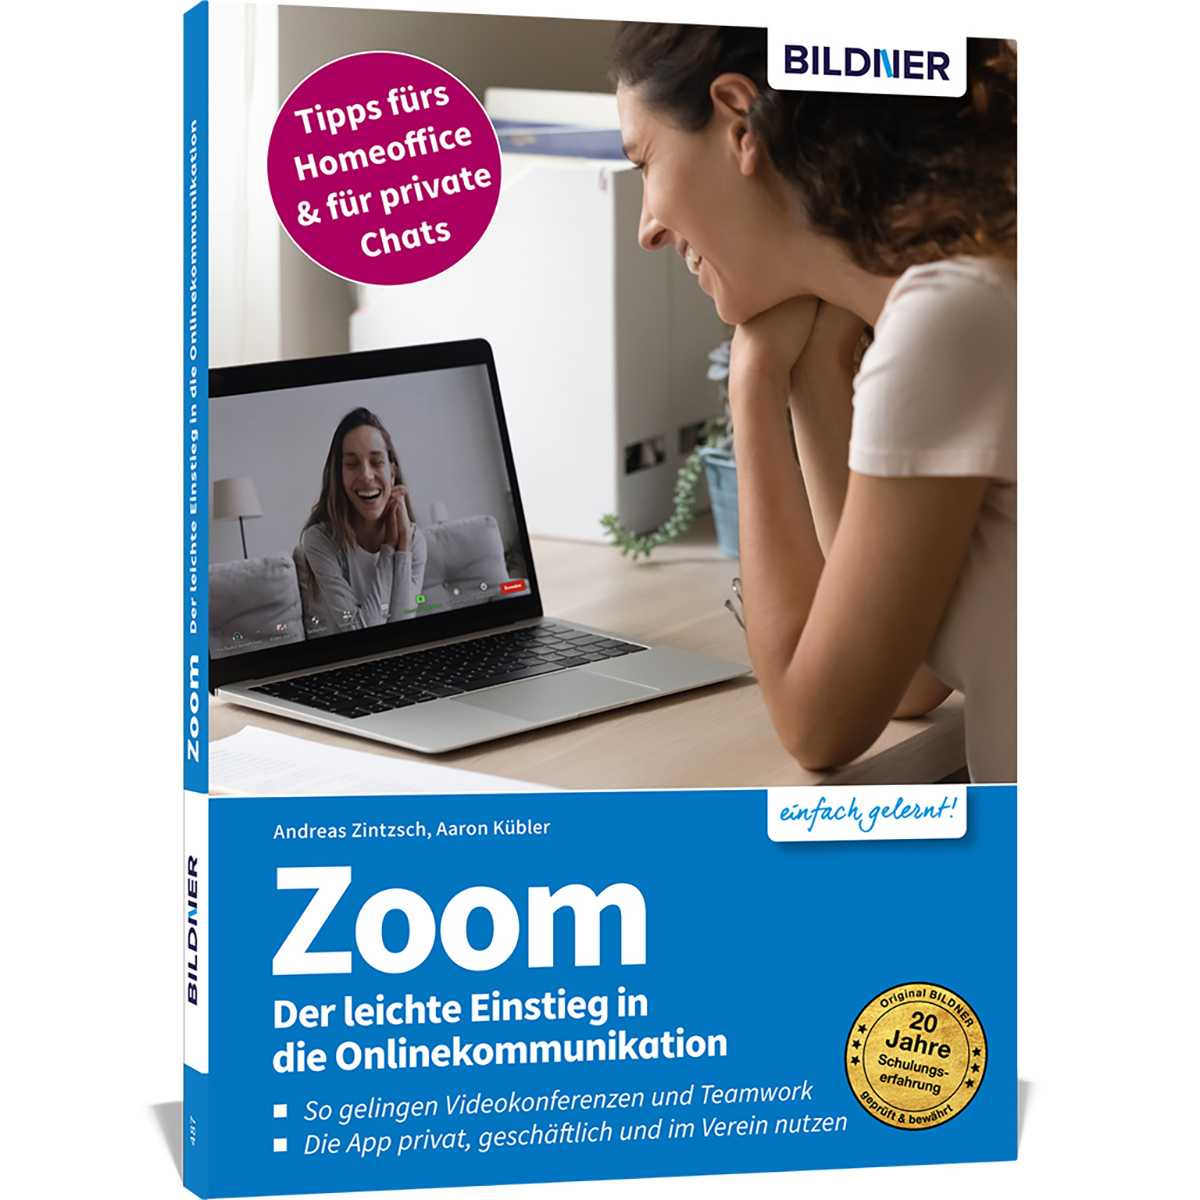 Zoom - Der leichte Onlinekommunikation in Einstieg die